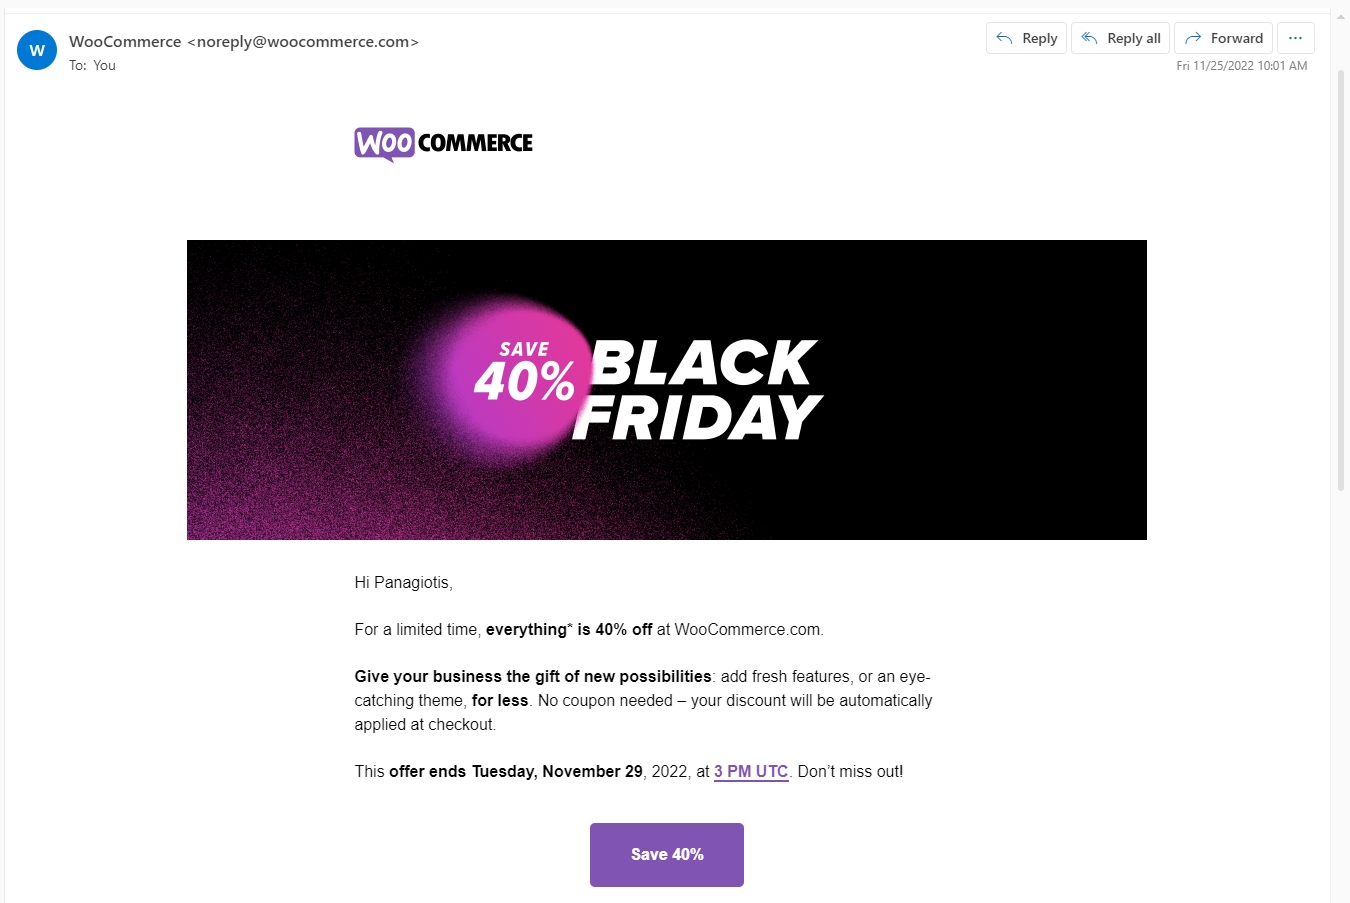 WooCommerce Black Friday Email